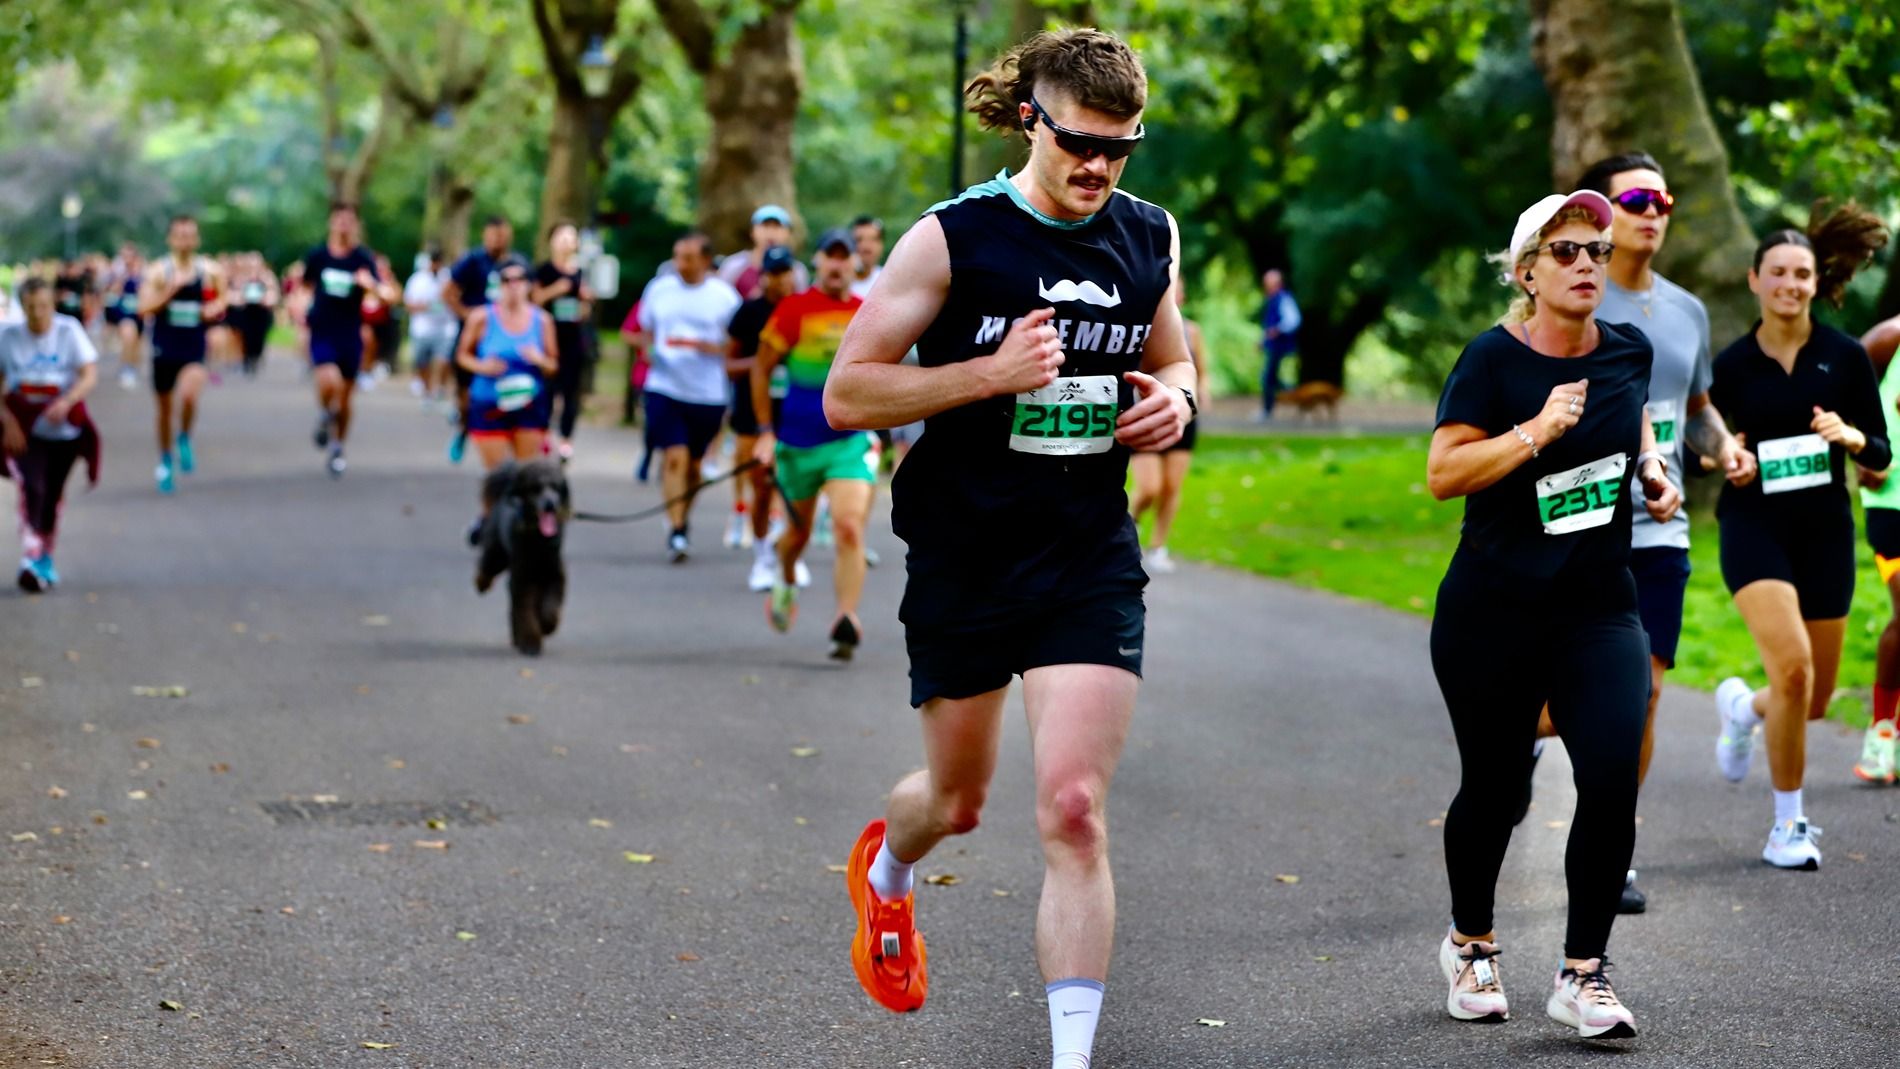 Harry running in a marathon